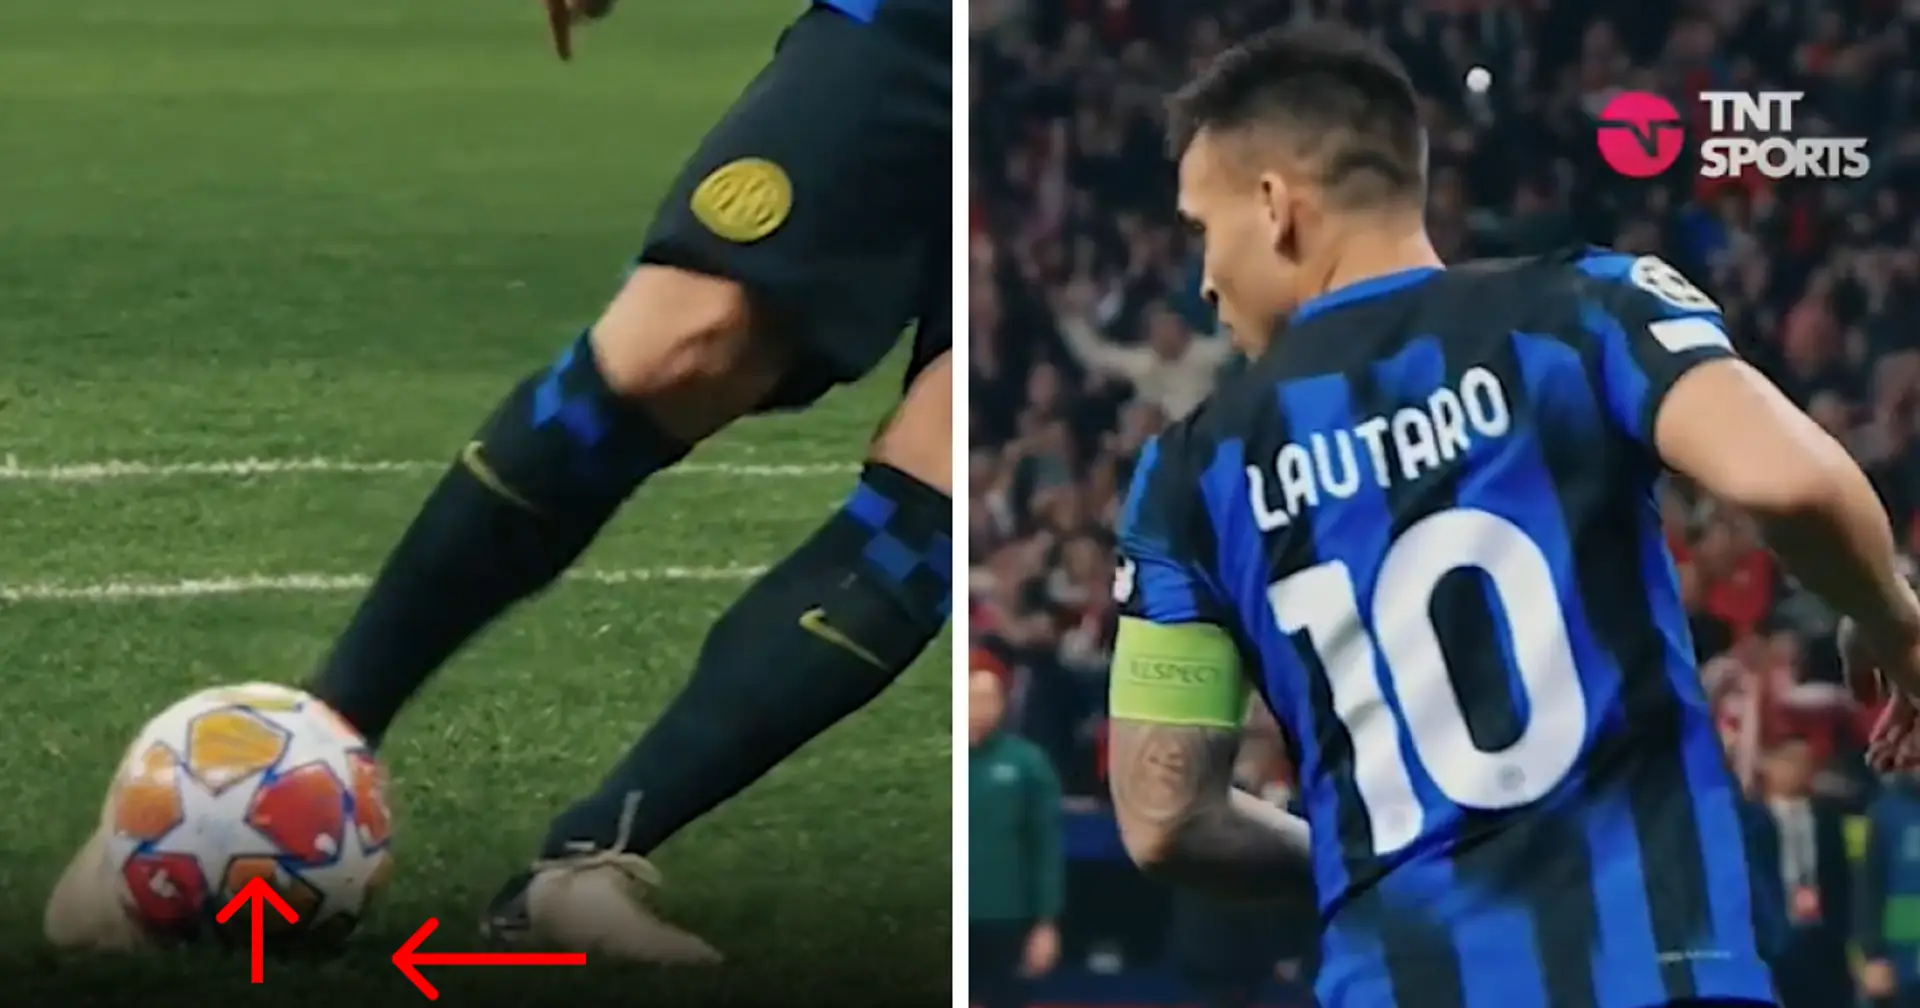 Unerwartete Aufnahmen zeigen, wie sich der Elfmeterpunkt beim Fehlschuss von Lautaro Martinez gegen Atlético Madrid bewegt